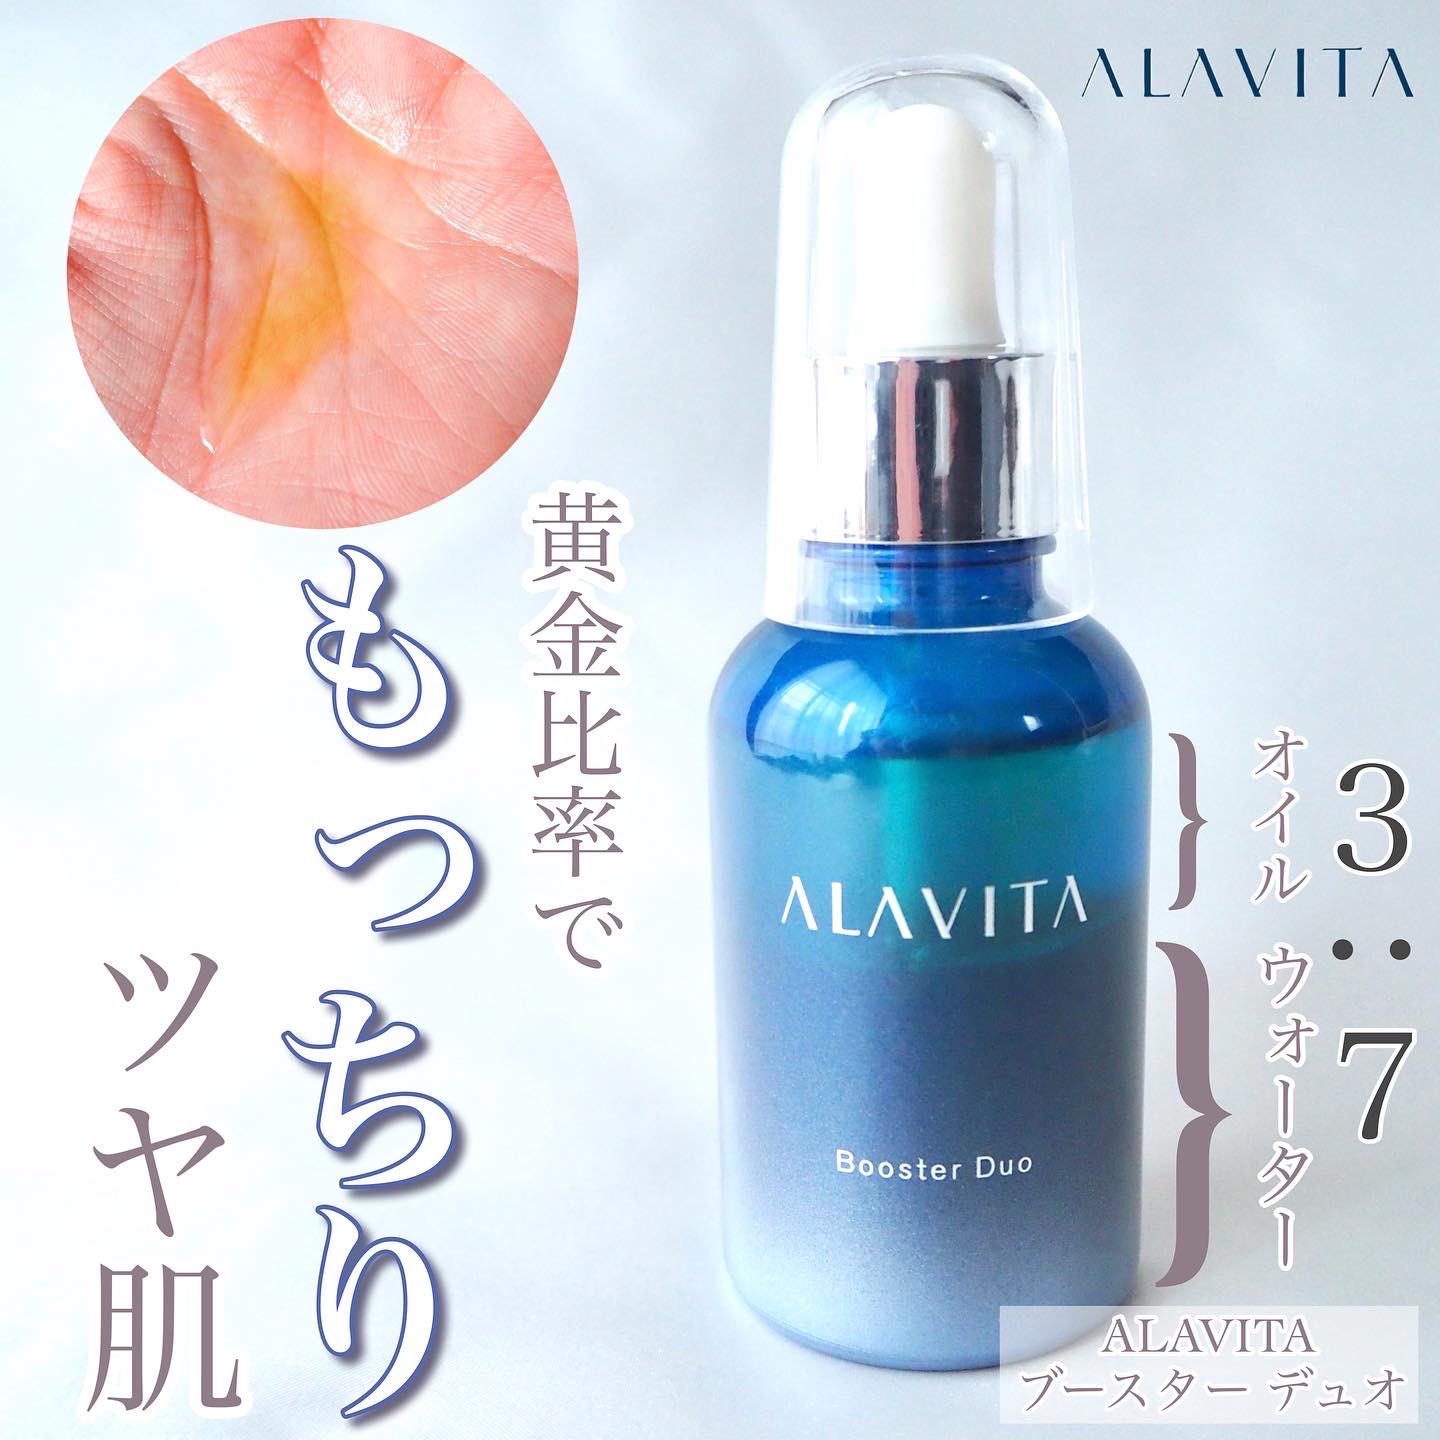 ALAVITA(アラヴィータ) / ブースターデュオの口コミ一覧｜美容・化粧品 